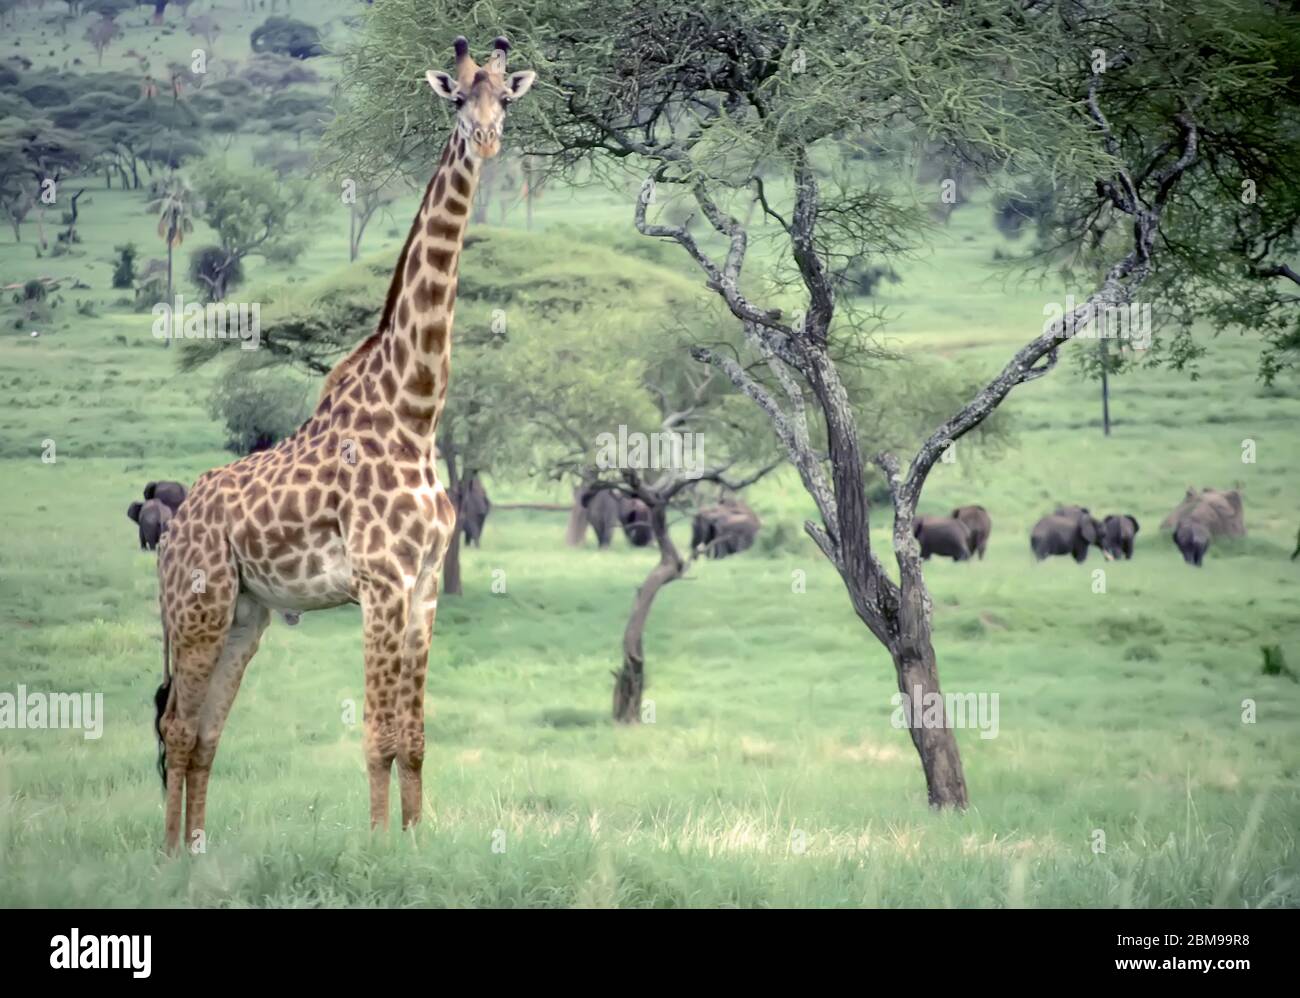 Giraffa con elefanti sullo sfondo dell'Africa orientale Foto Stock